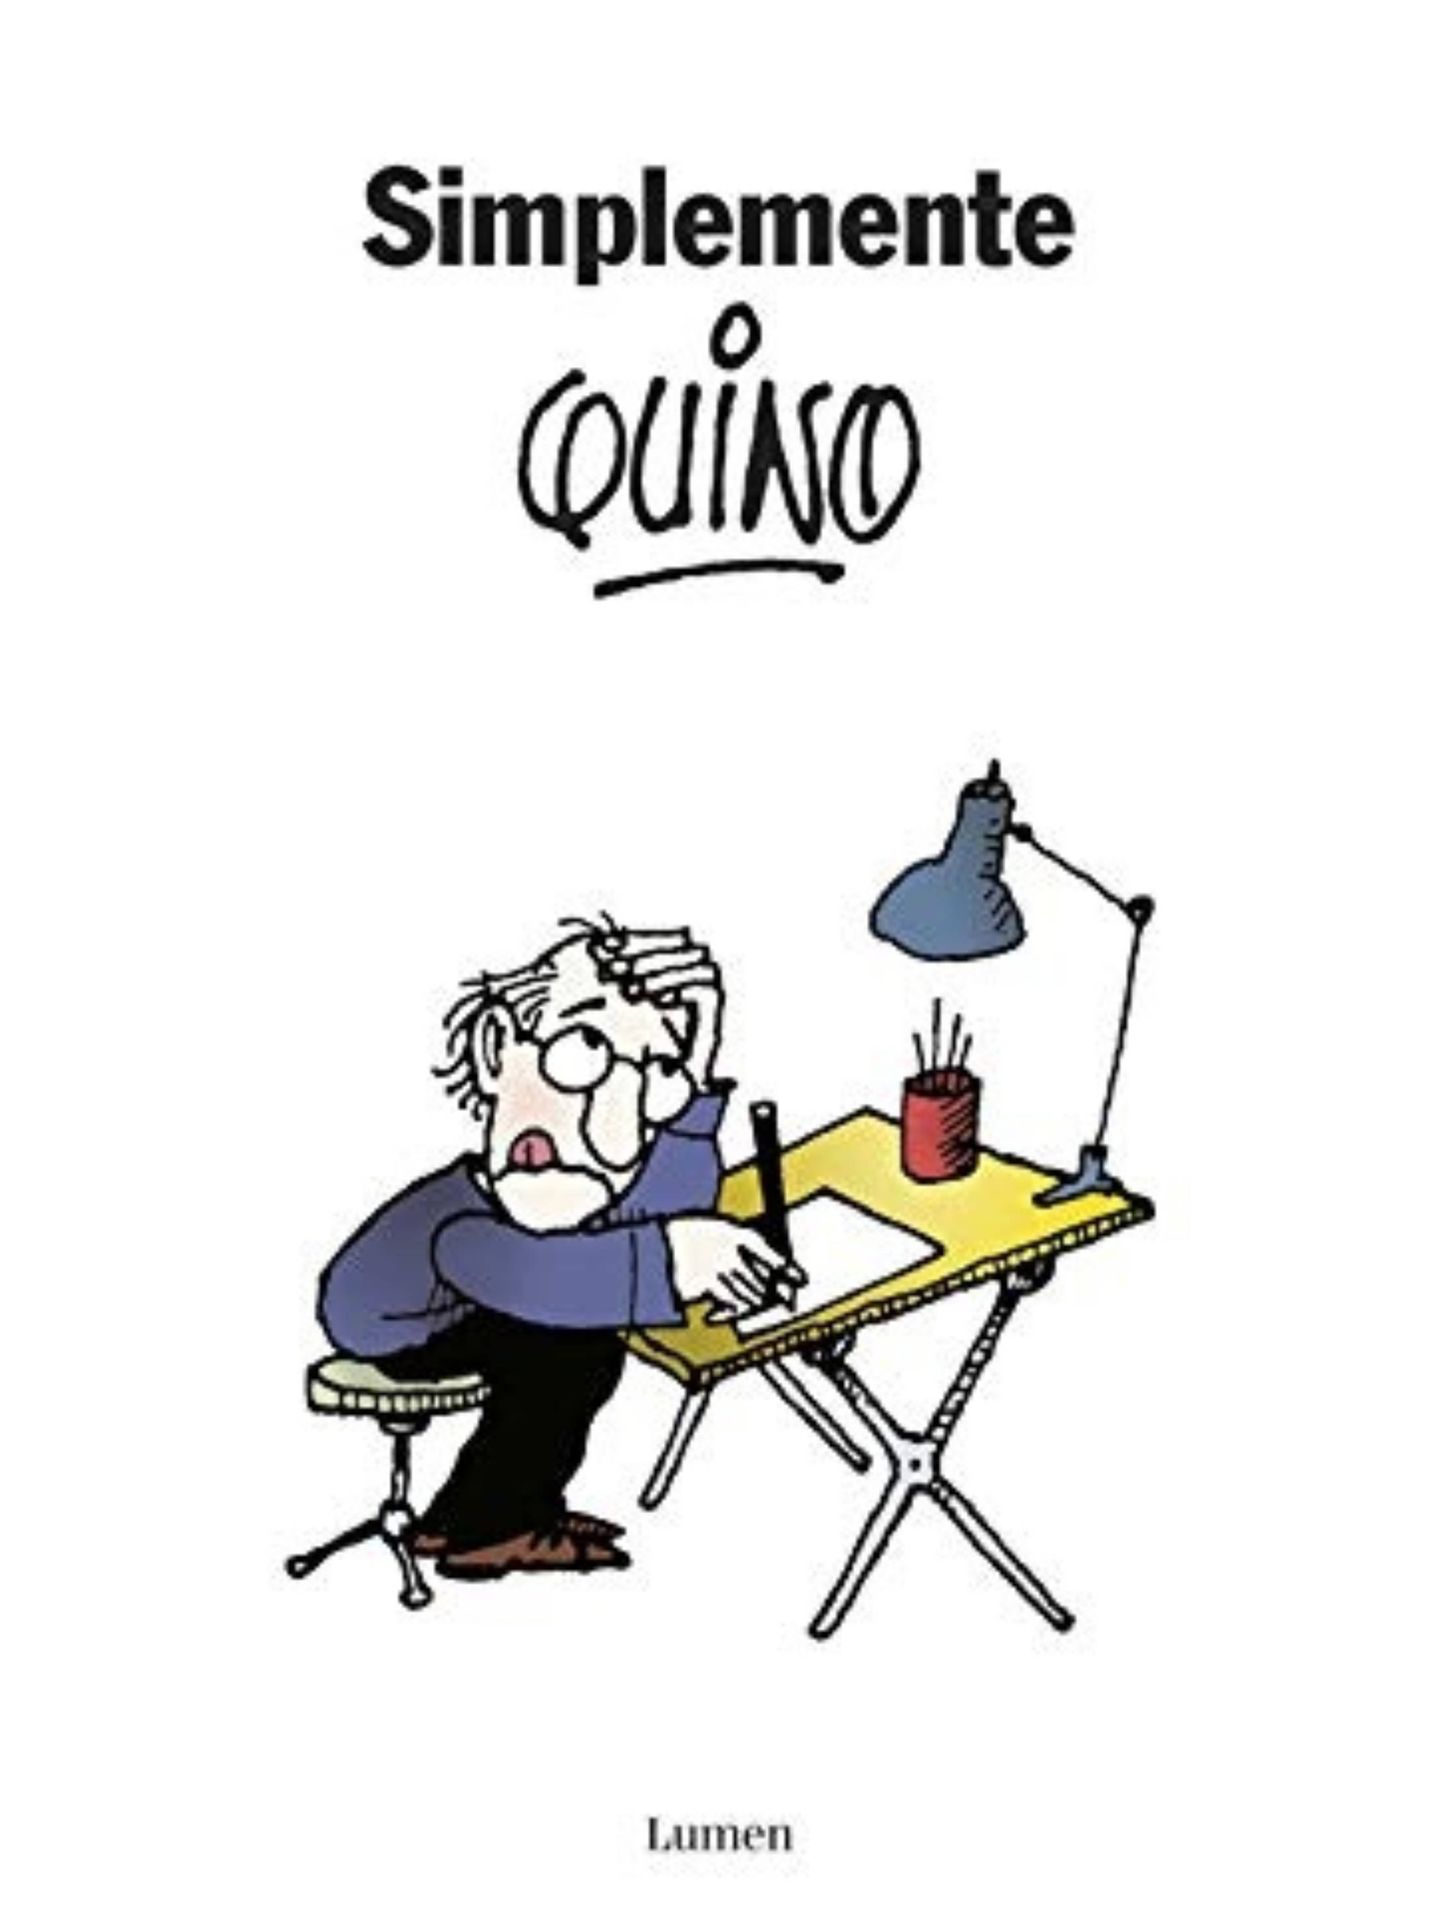 Completa tu colección de obras de Quino en Amazon. (Cortesía)